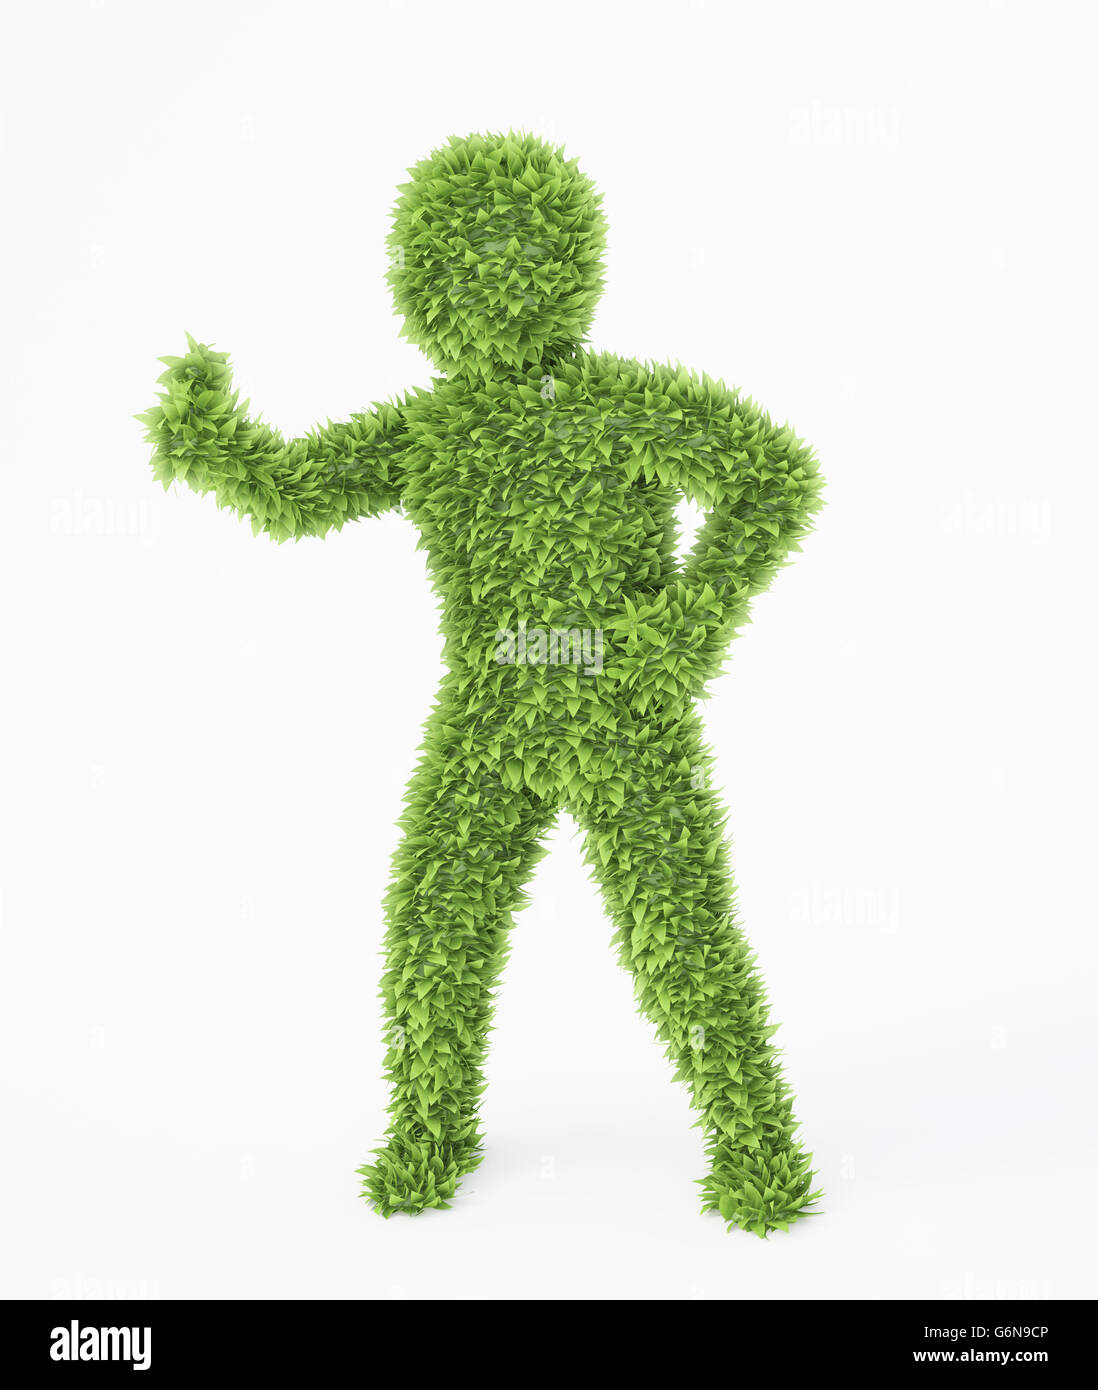 Couvert de feuilles eco friendly 3D character Banque D'Images